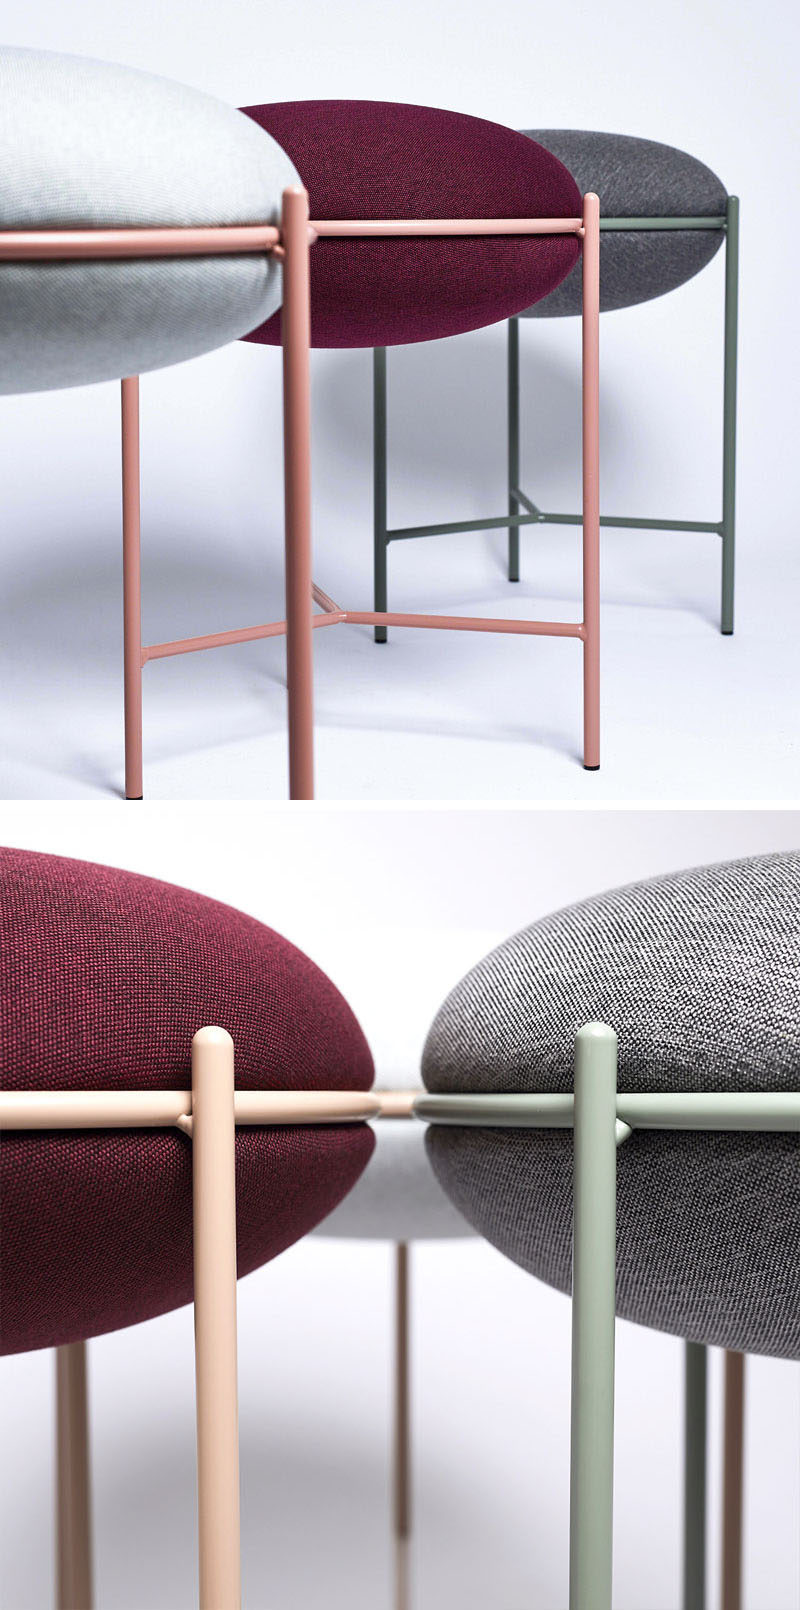 Табурет NEA, сделанный из тонкого металла и изогнутой подушки, предлагает современный вариант сидения с легким акцентом цвета. # Мебель # Современная мебель # Современная мебель # Минималистичная мебель